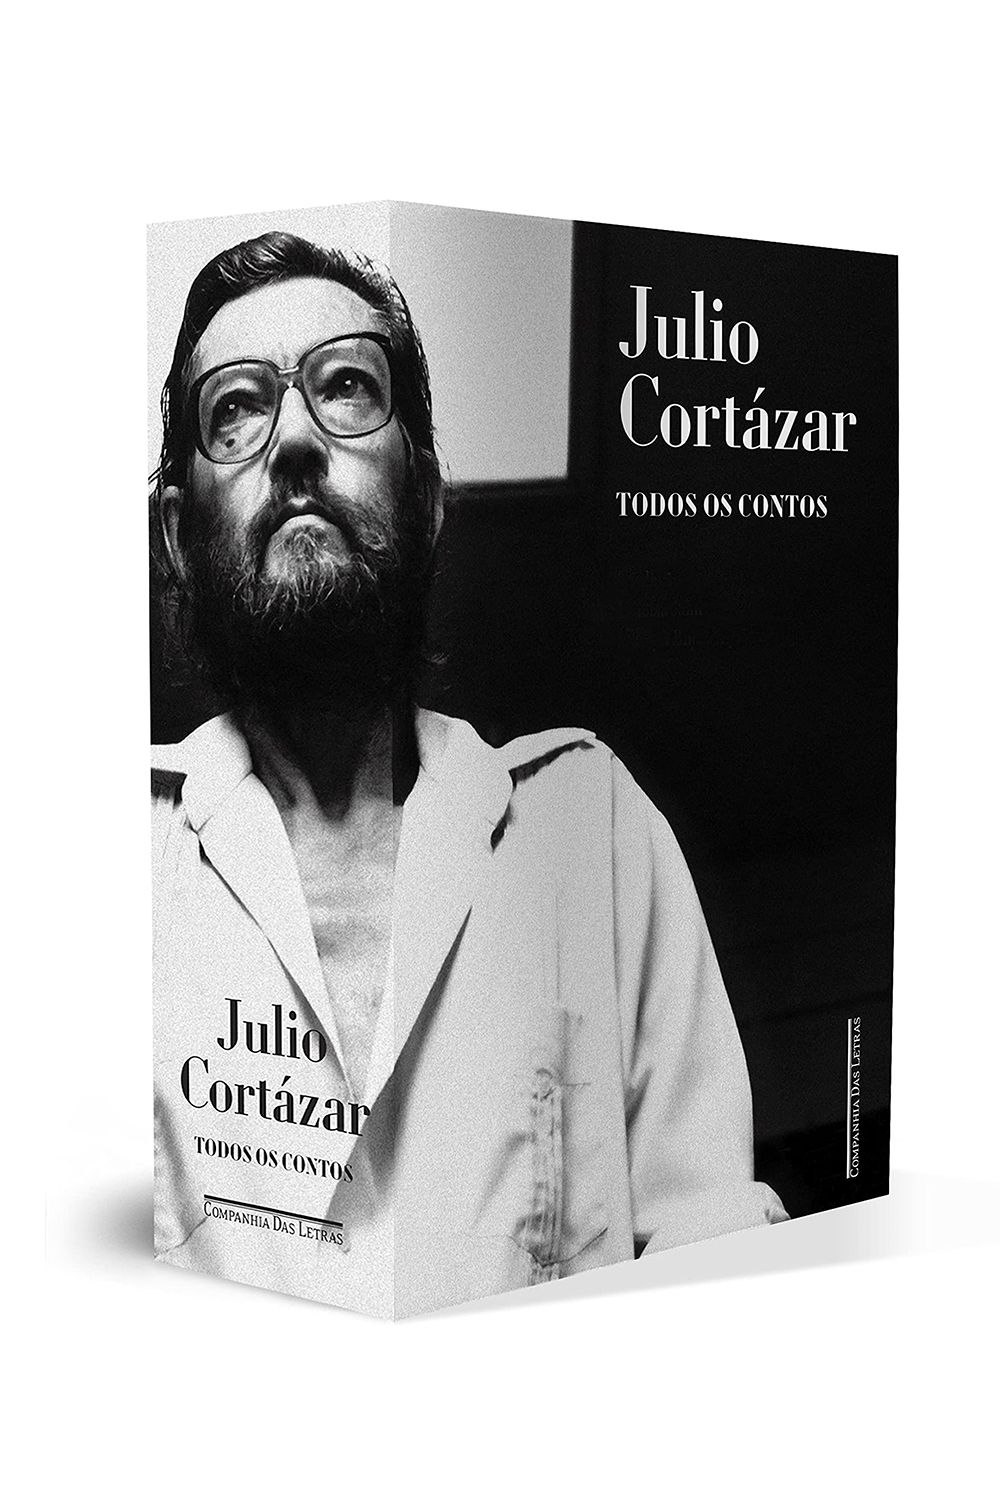 Todos Os Fogos O Fogo by Julio Cortázar